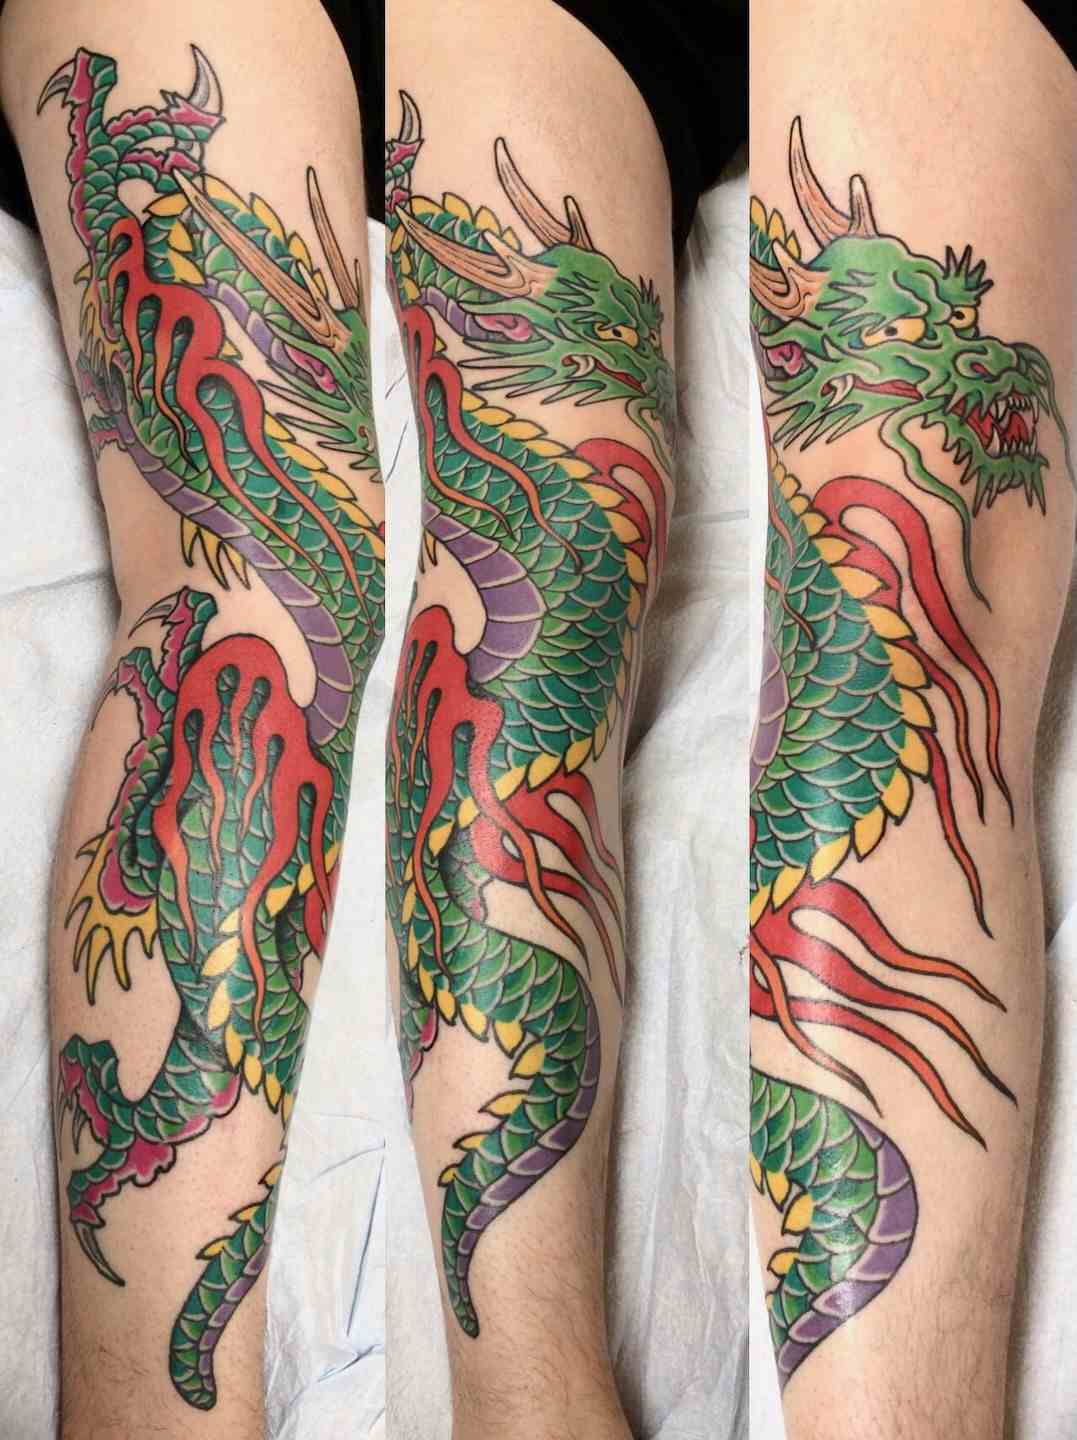 Dragon leg tattoo